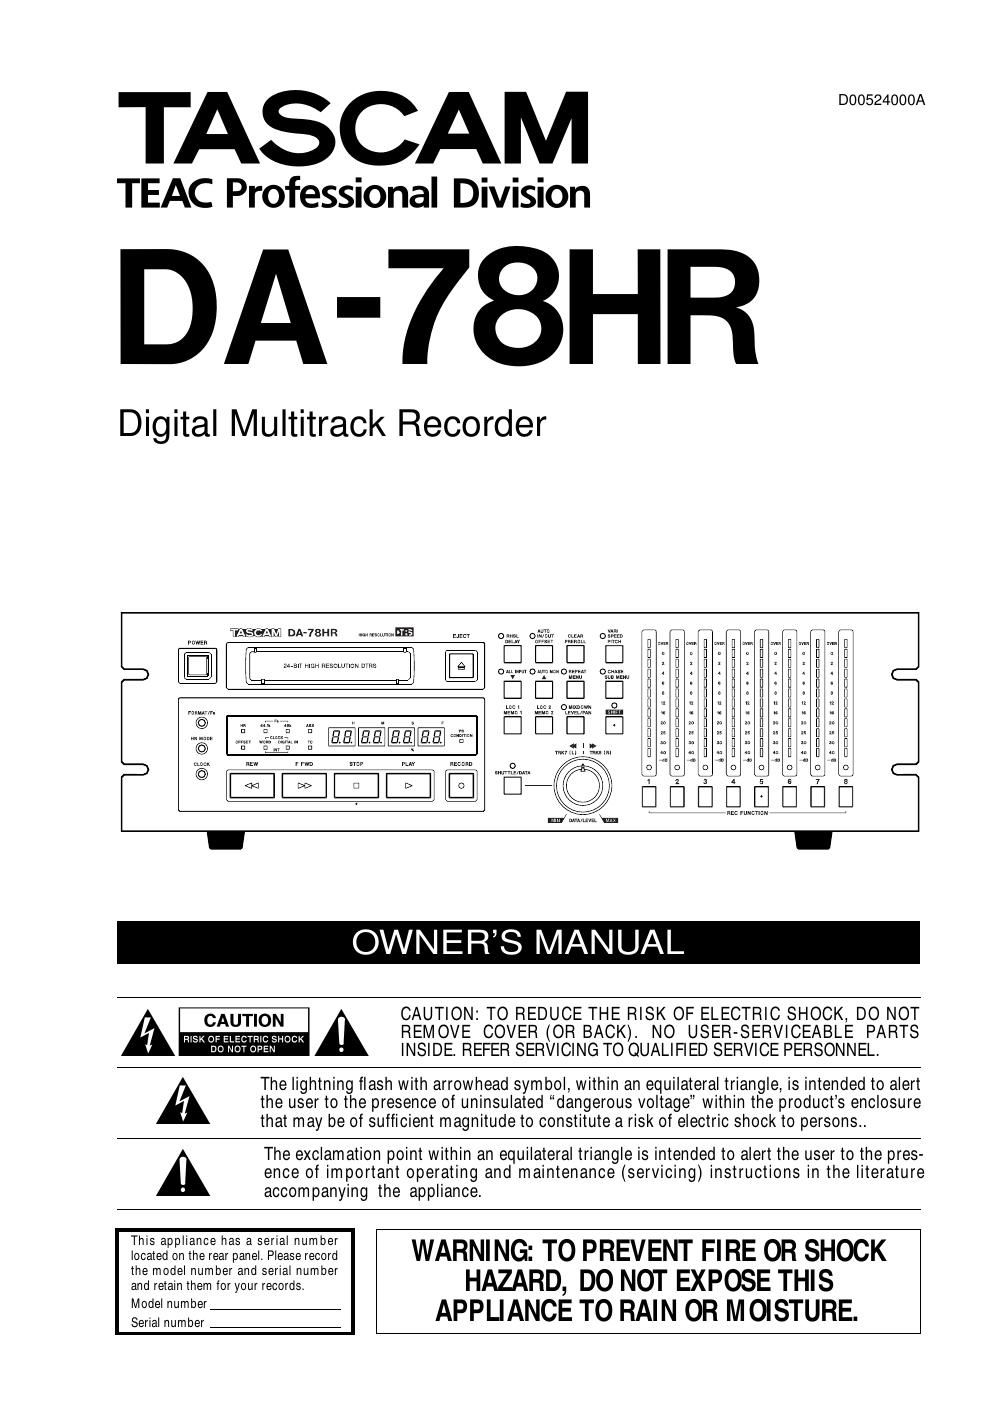 Tascam DA 78HR Owners Manual